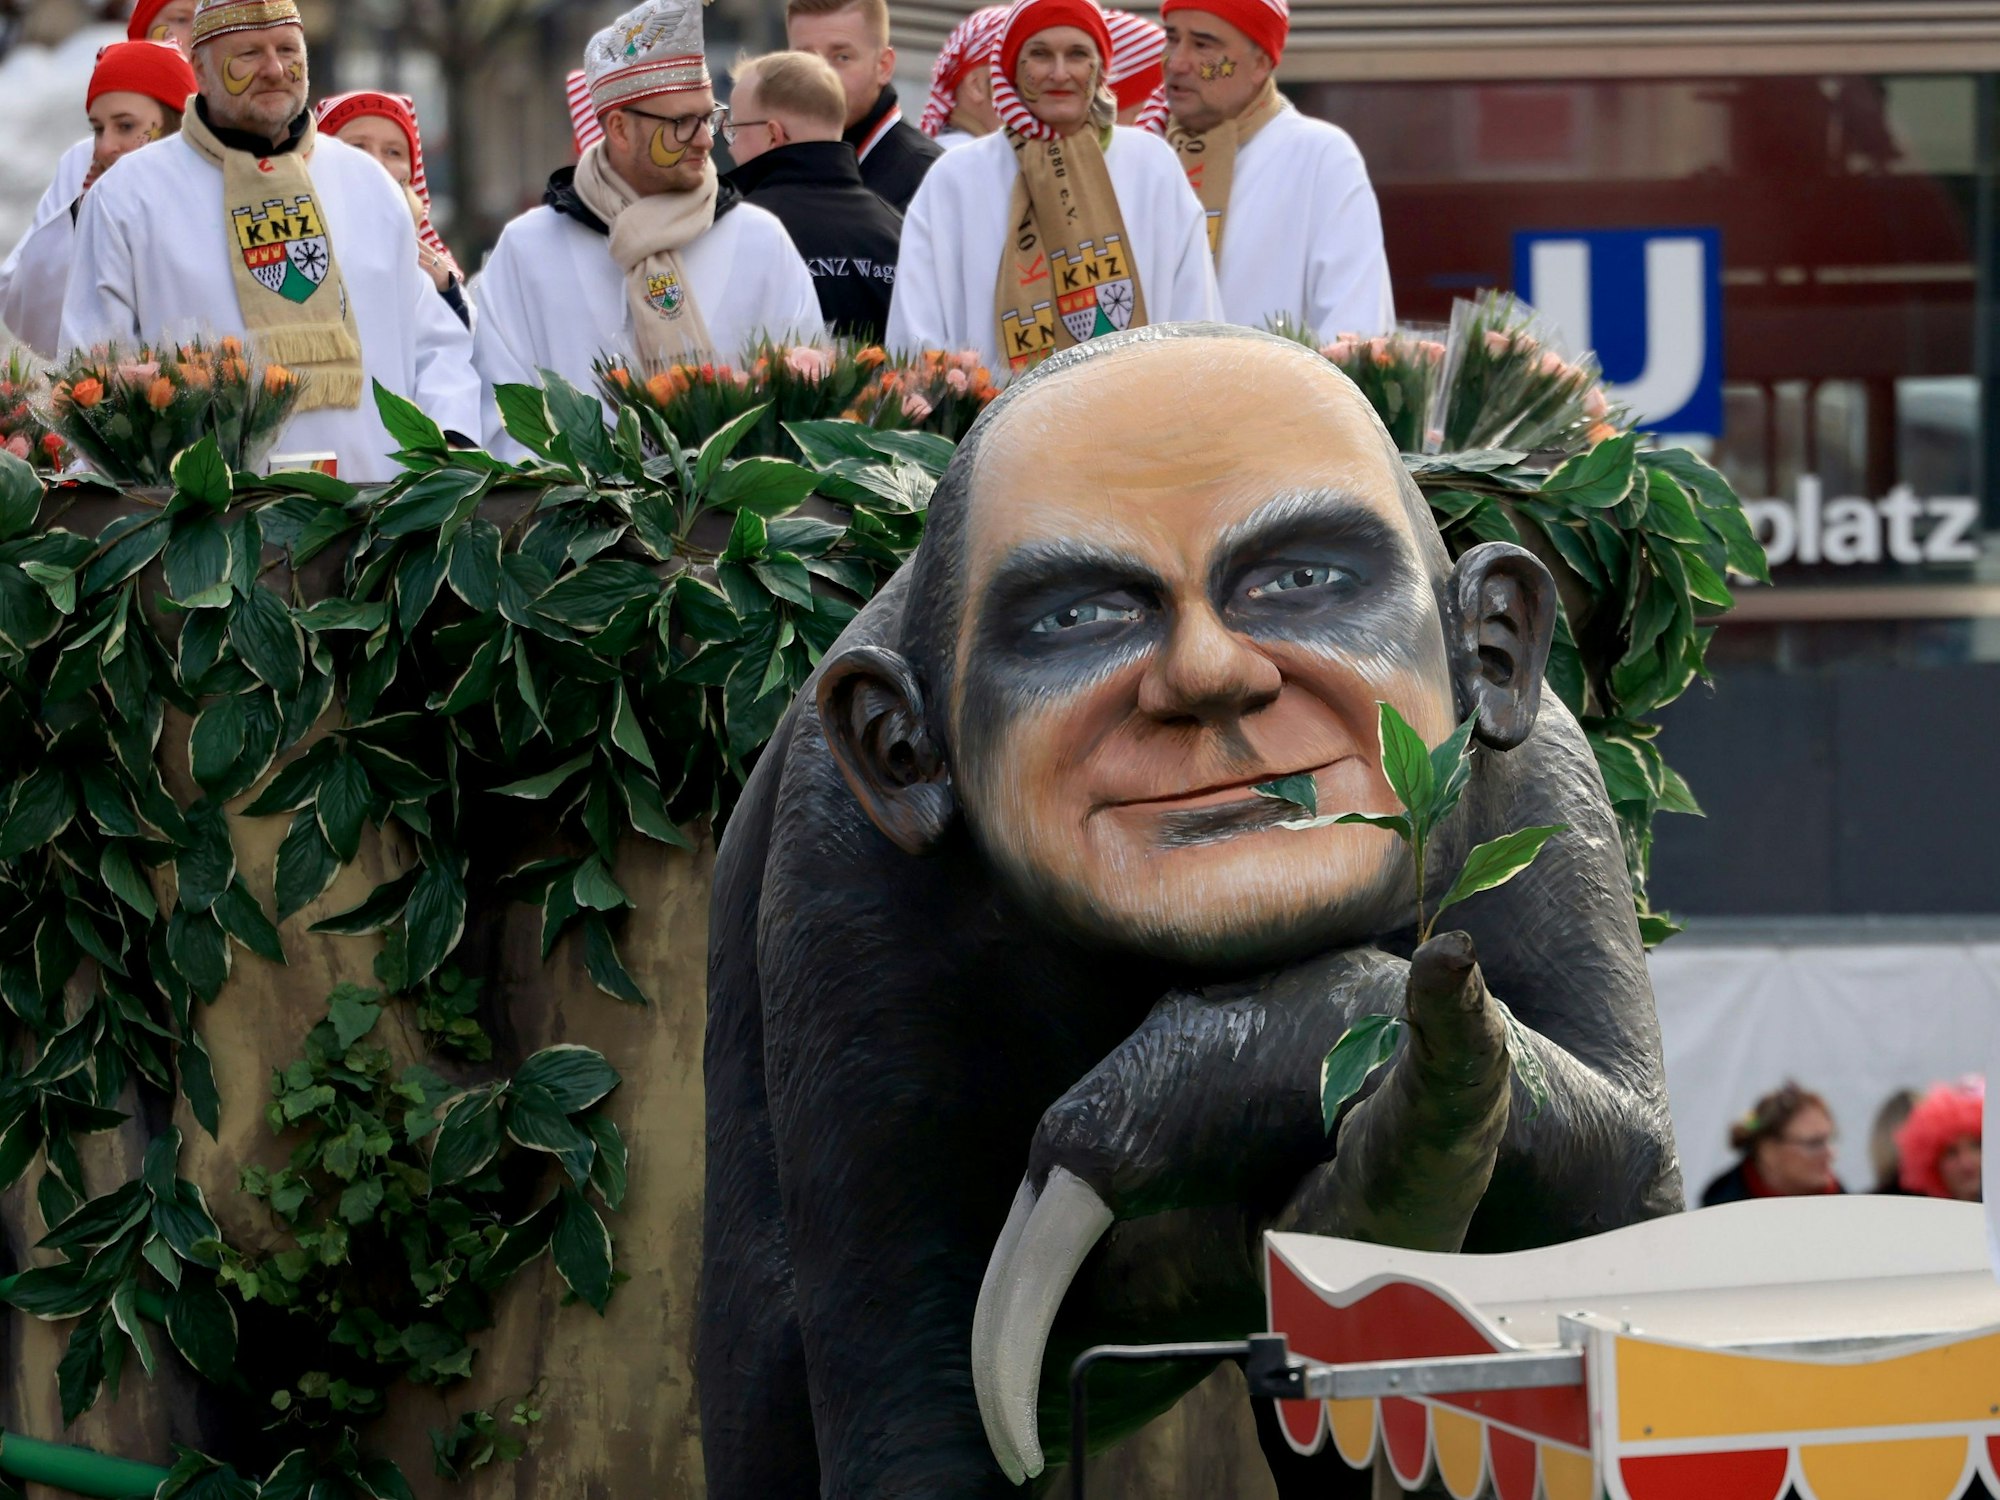 Ein Karnevalswagen ziert ein Faultier, das das Gesicht von Bundeskanzler Olaf Scholz hat.